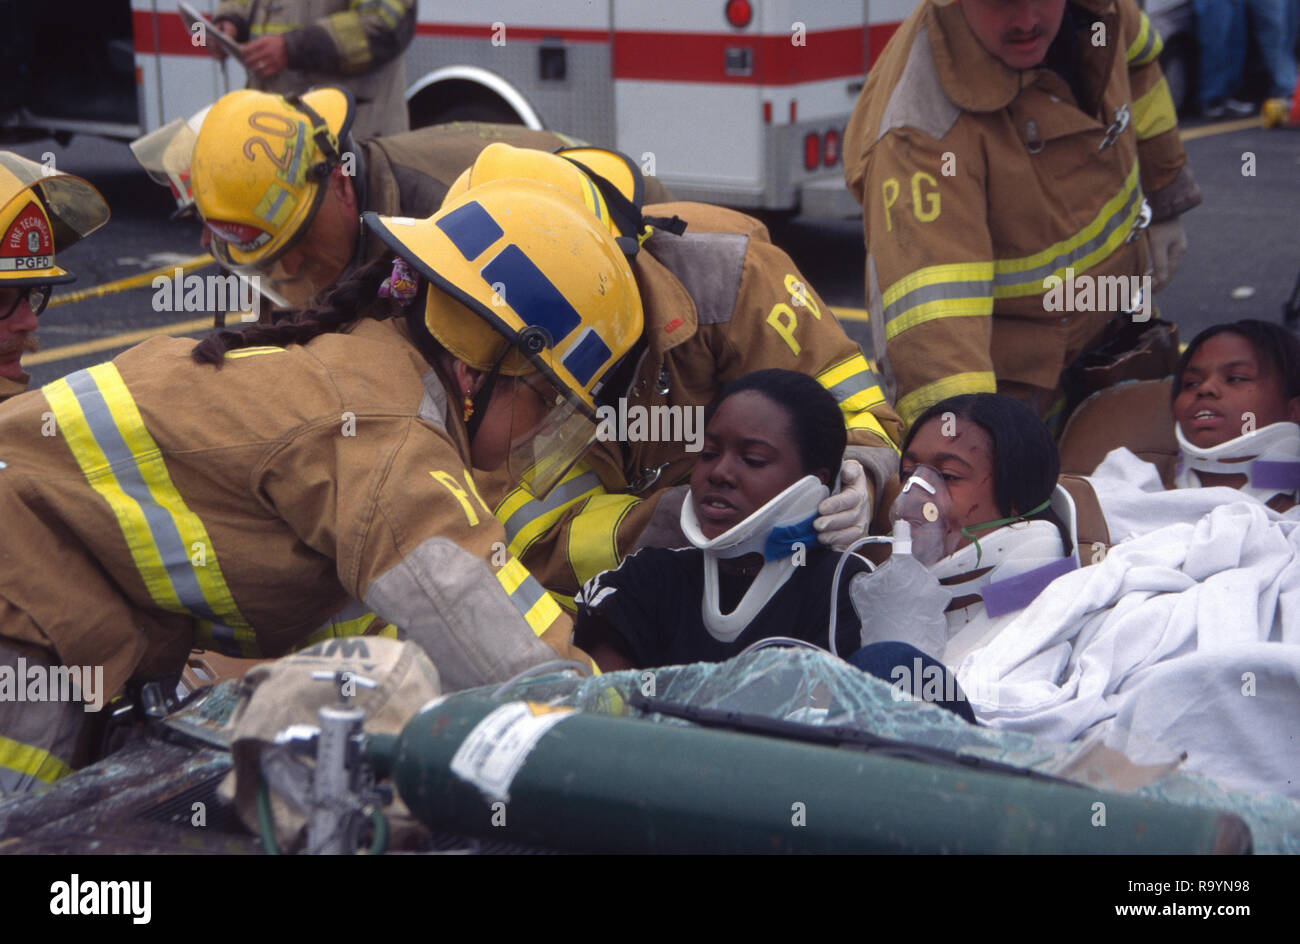 Les pompiers travaillent sur le sauvetage des gens blessés blessé dans un accident automobile Banque D'Images